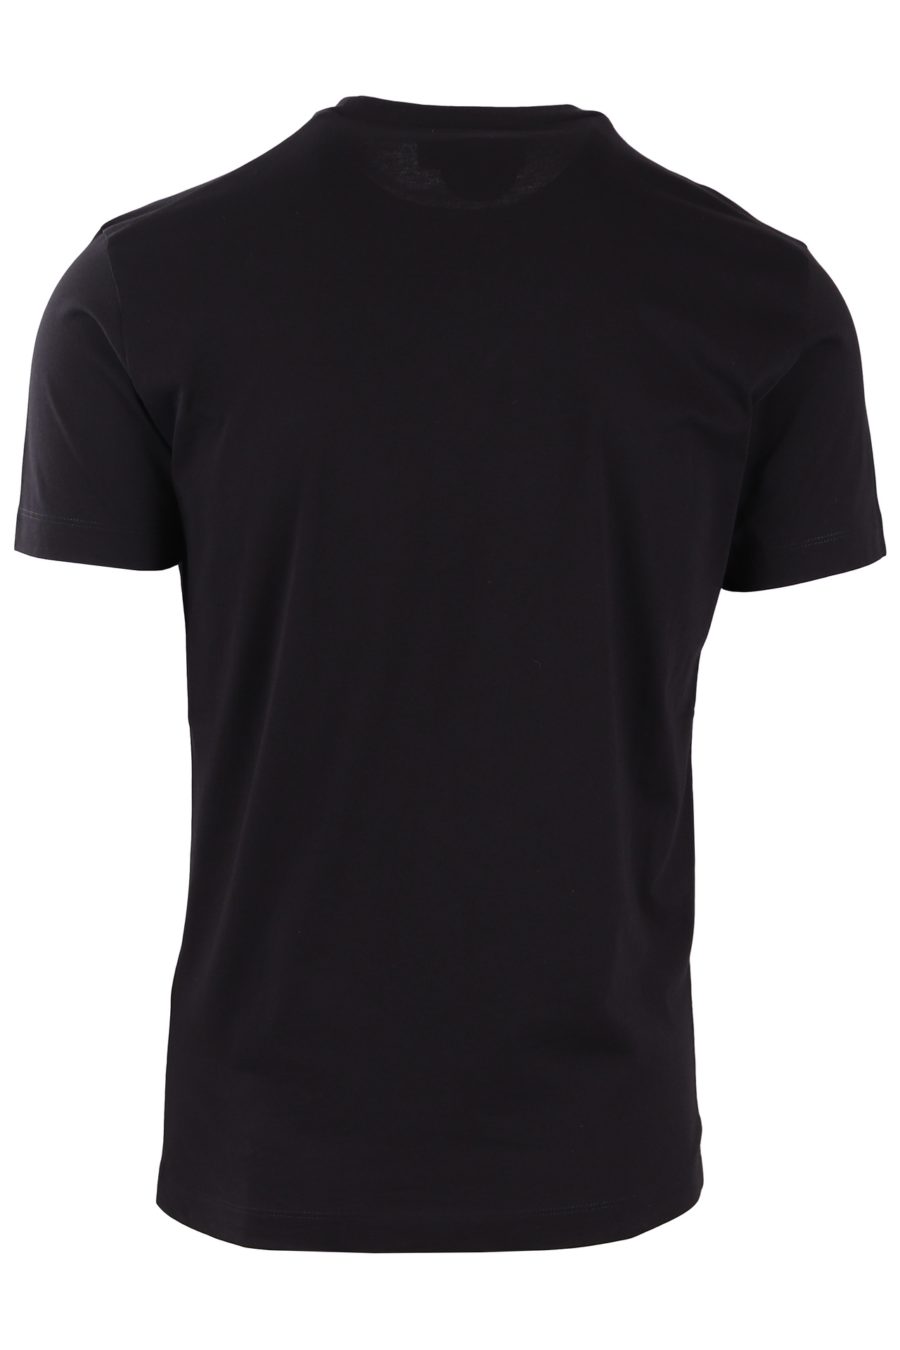 T-shirt Dsquared2 preto com vários logótipos - bd543689776e36dc5a1640b01b9919bb4bd0a6f8